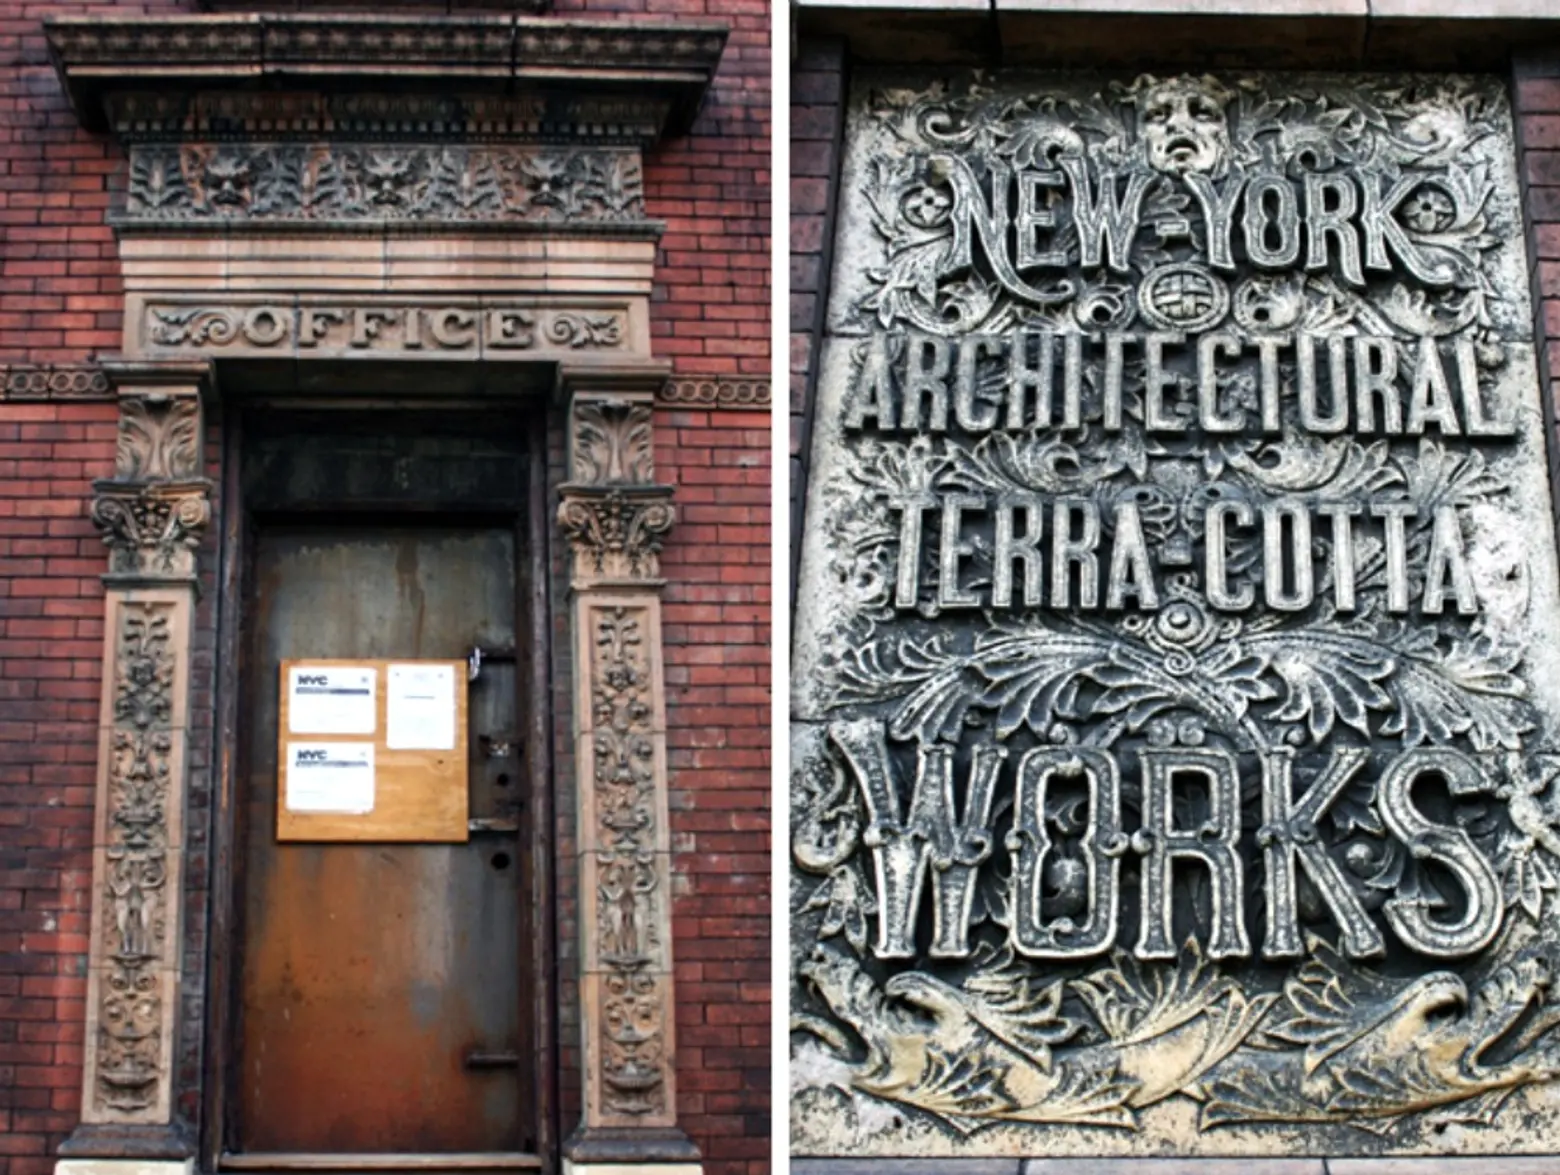 New York Architectural Terra Cotta Works